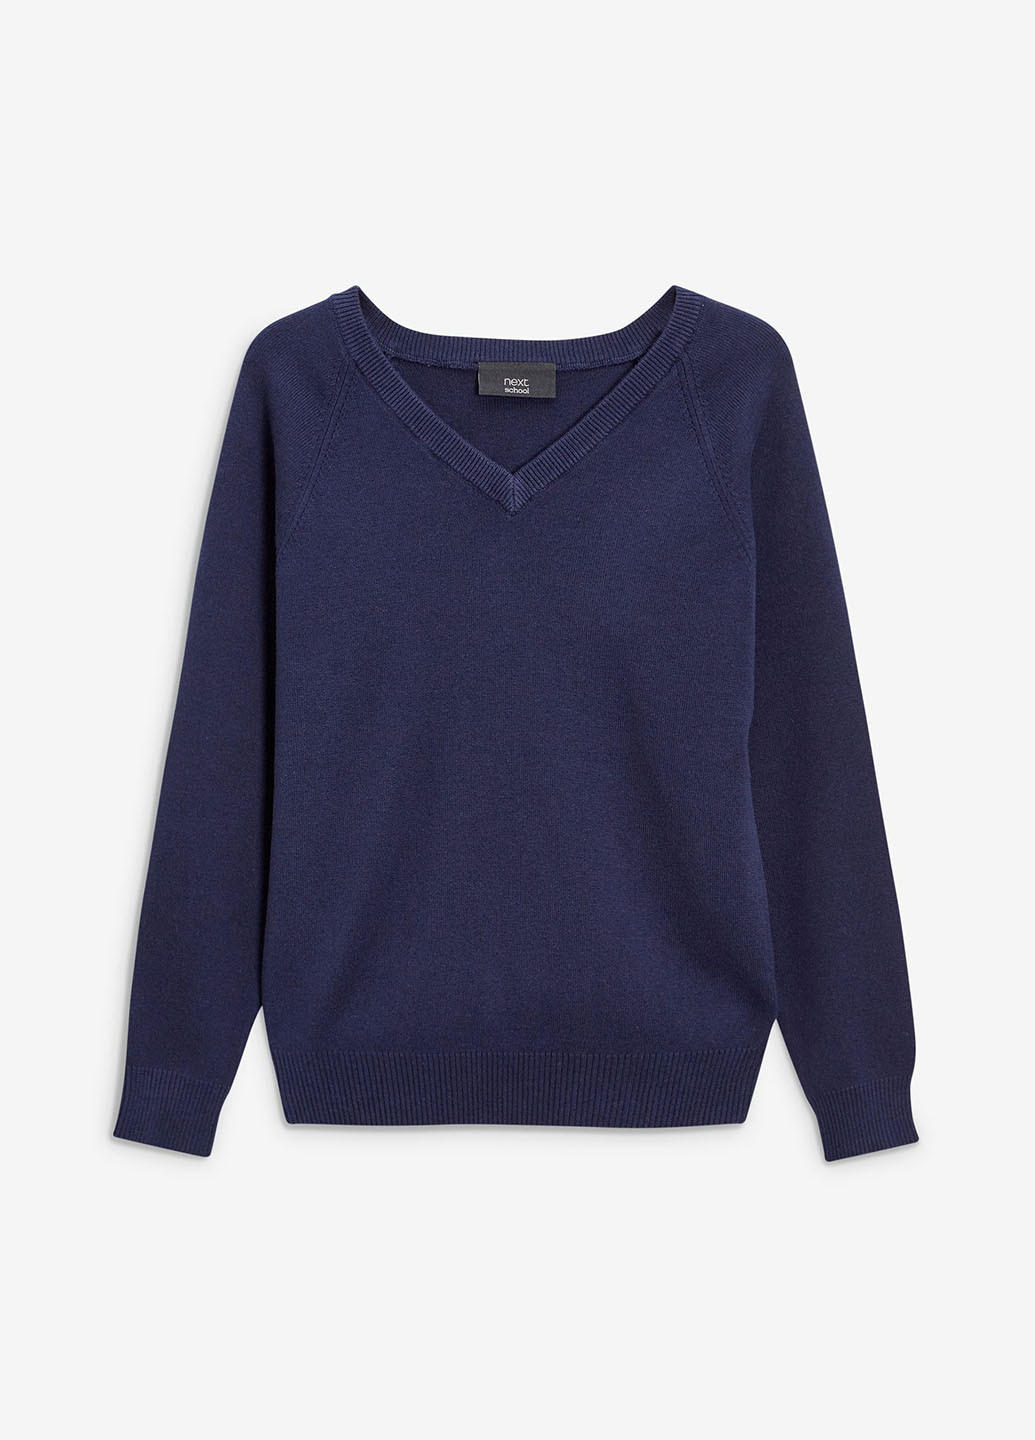 Синий демисезонный пуловер пуловер Next